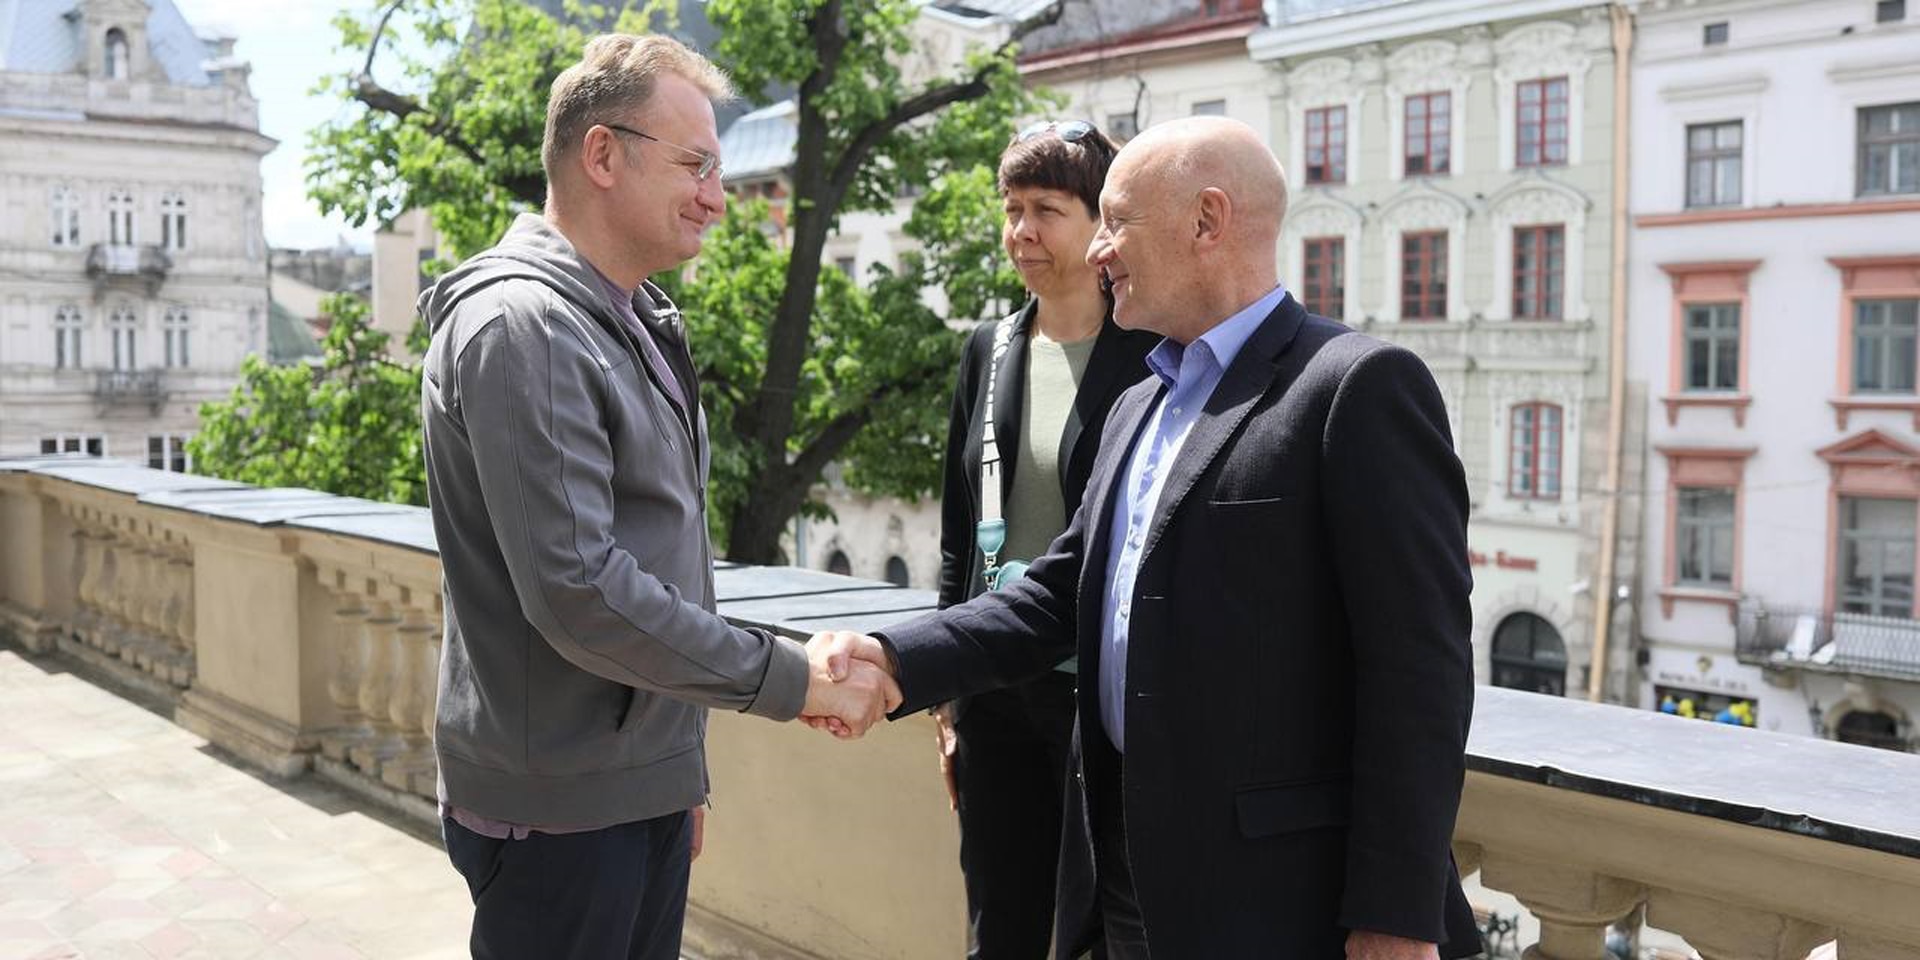 Manuel Bessler met the Mayor of Lviv Andriy Sadovy.